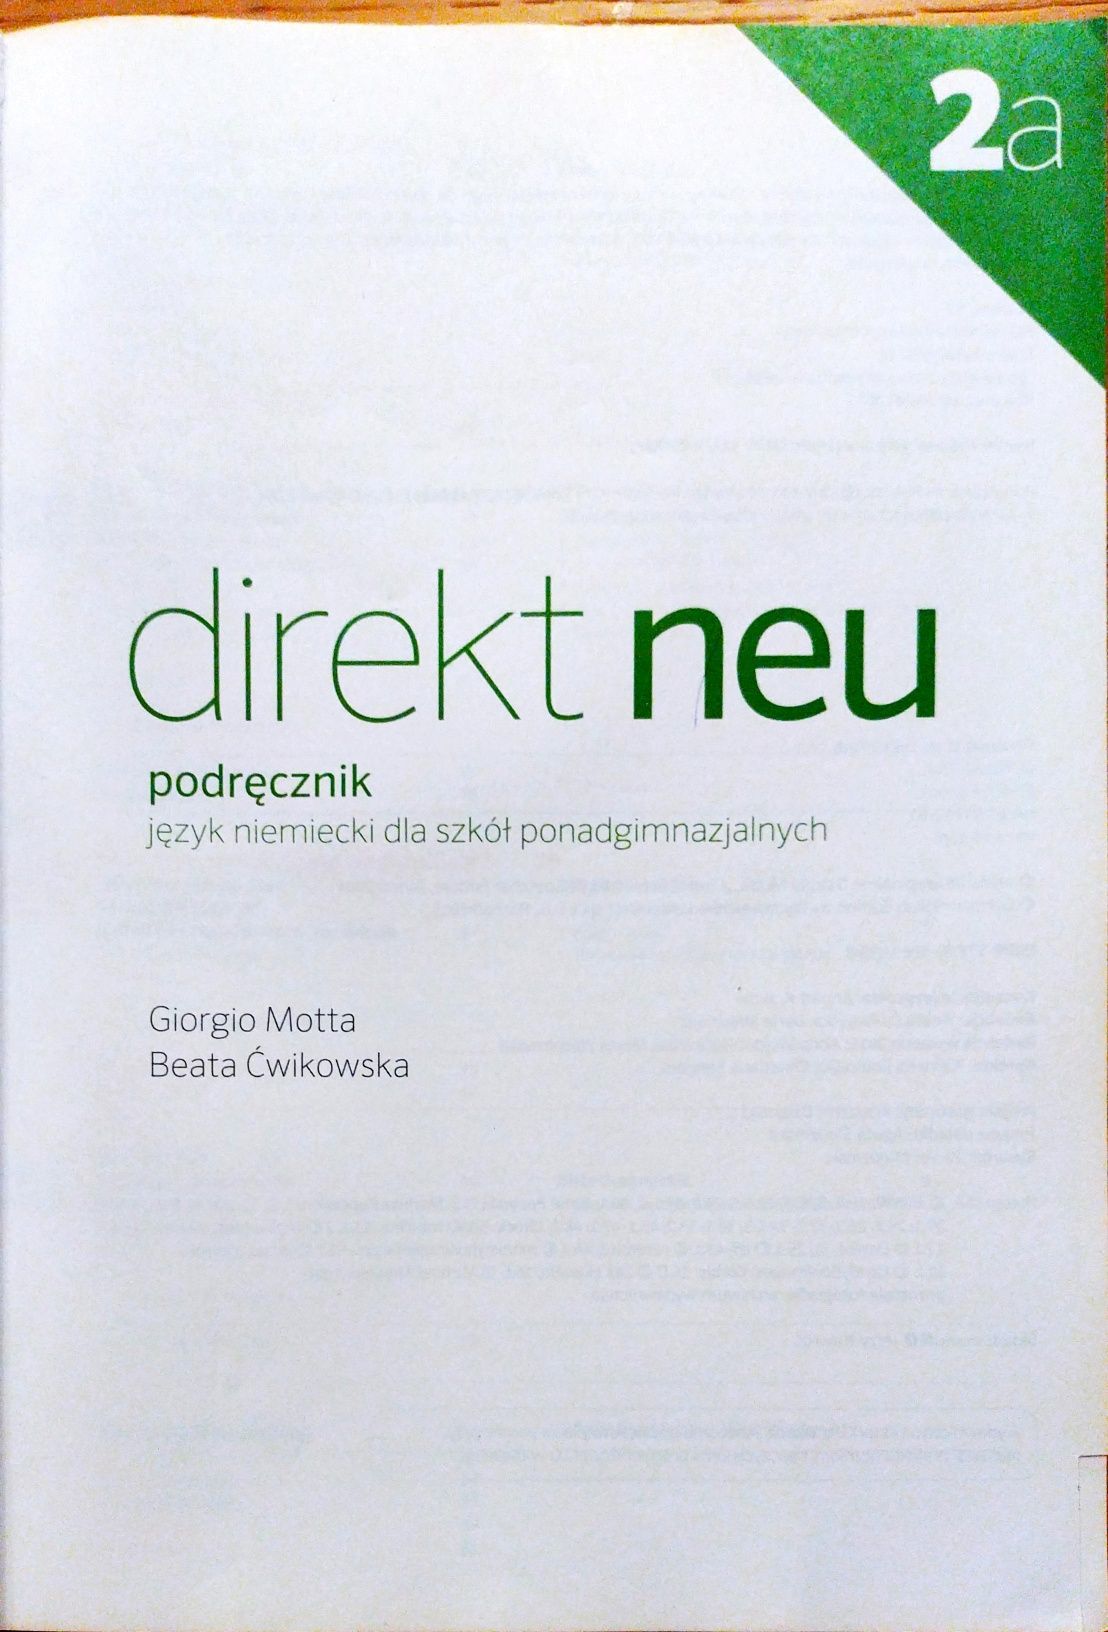 Język niemiecki 2a lektorklett podręcznik